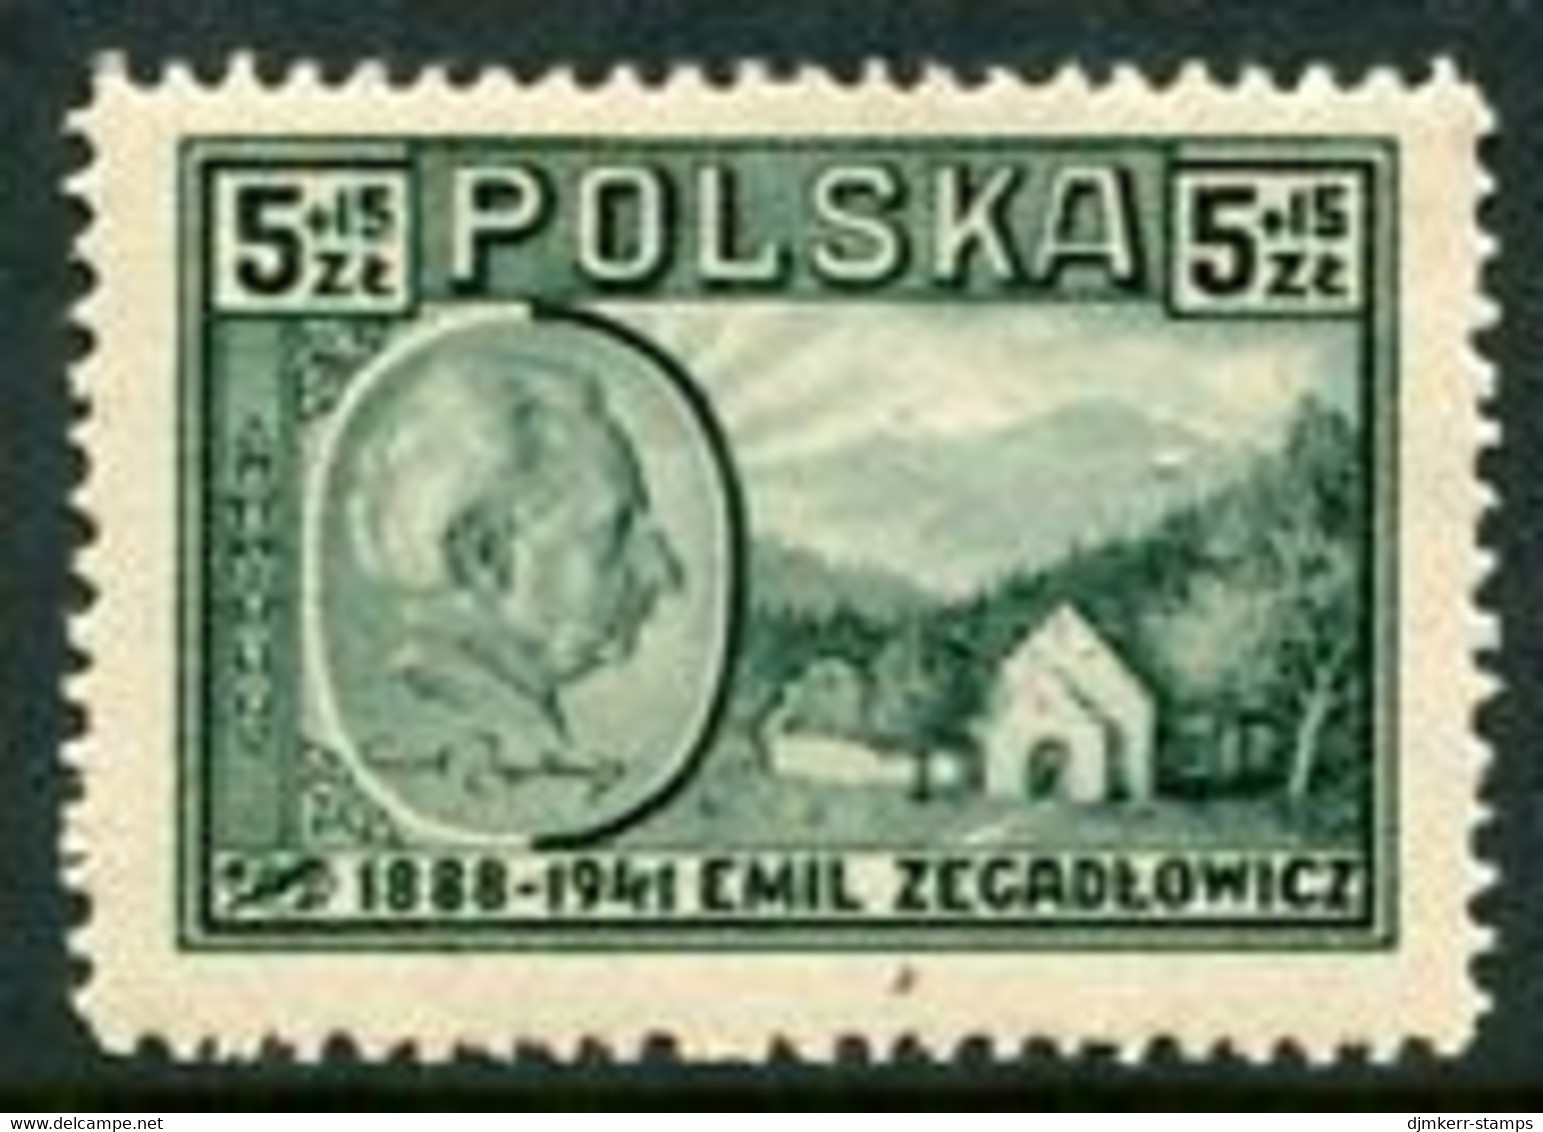 POLAND 1947 Zegadlowicz LHM / *.  Michel 453 - Ongebruikt